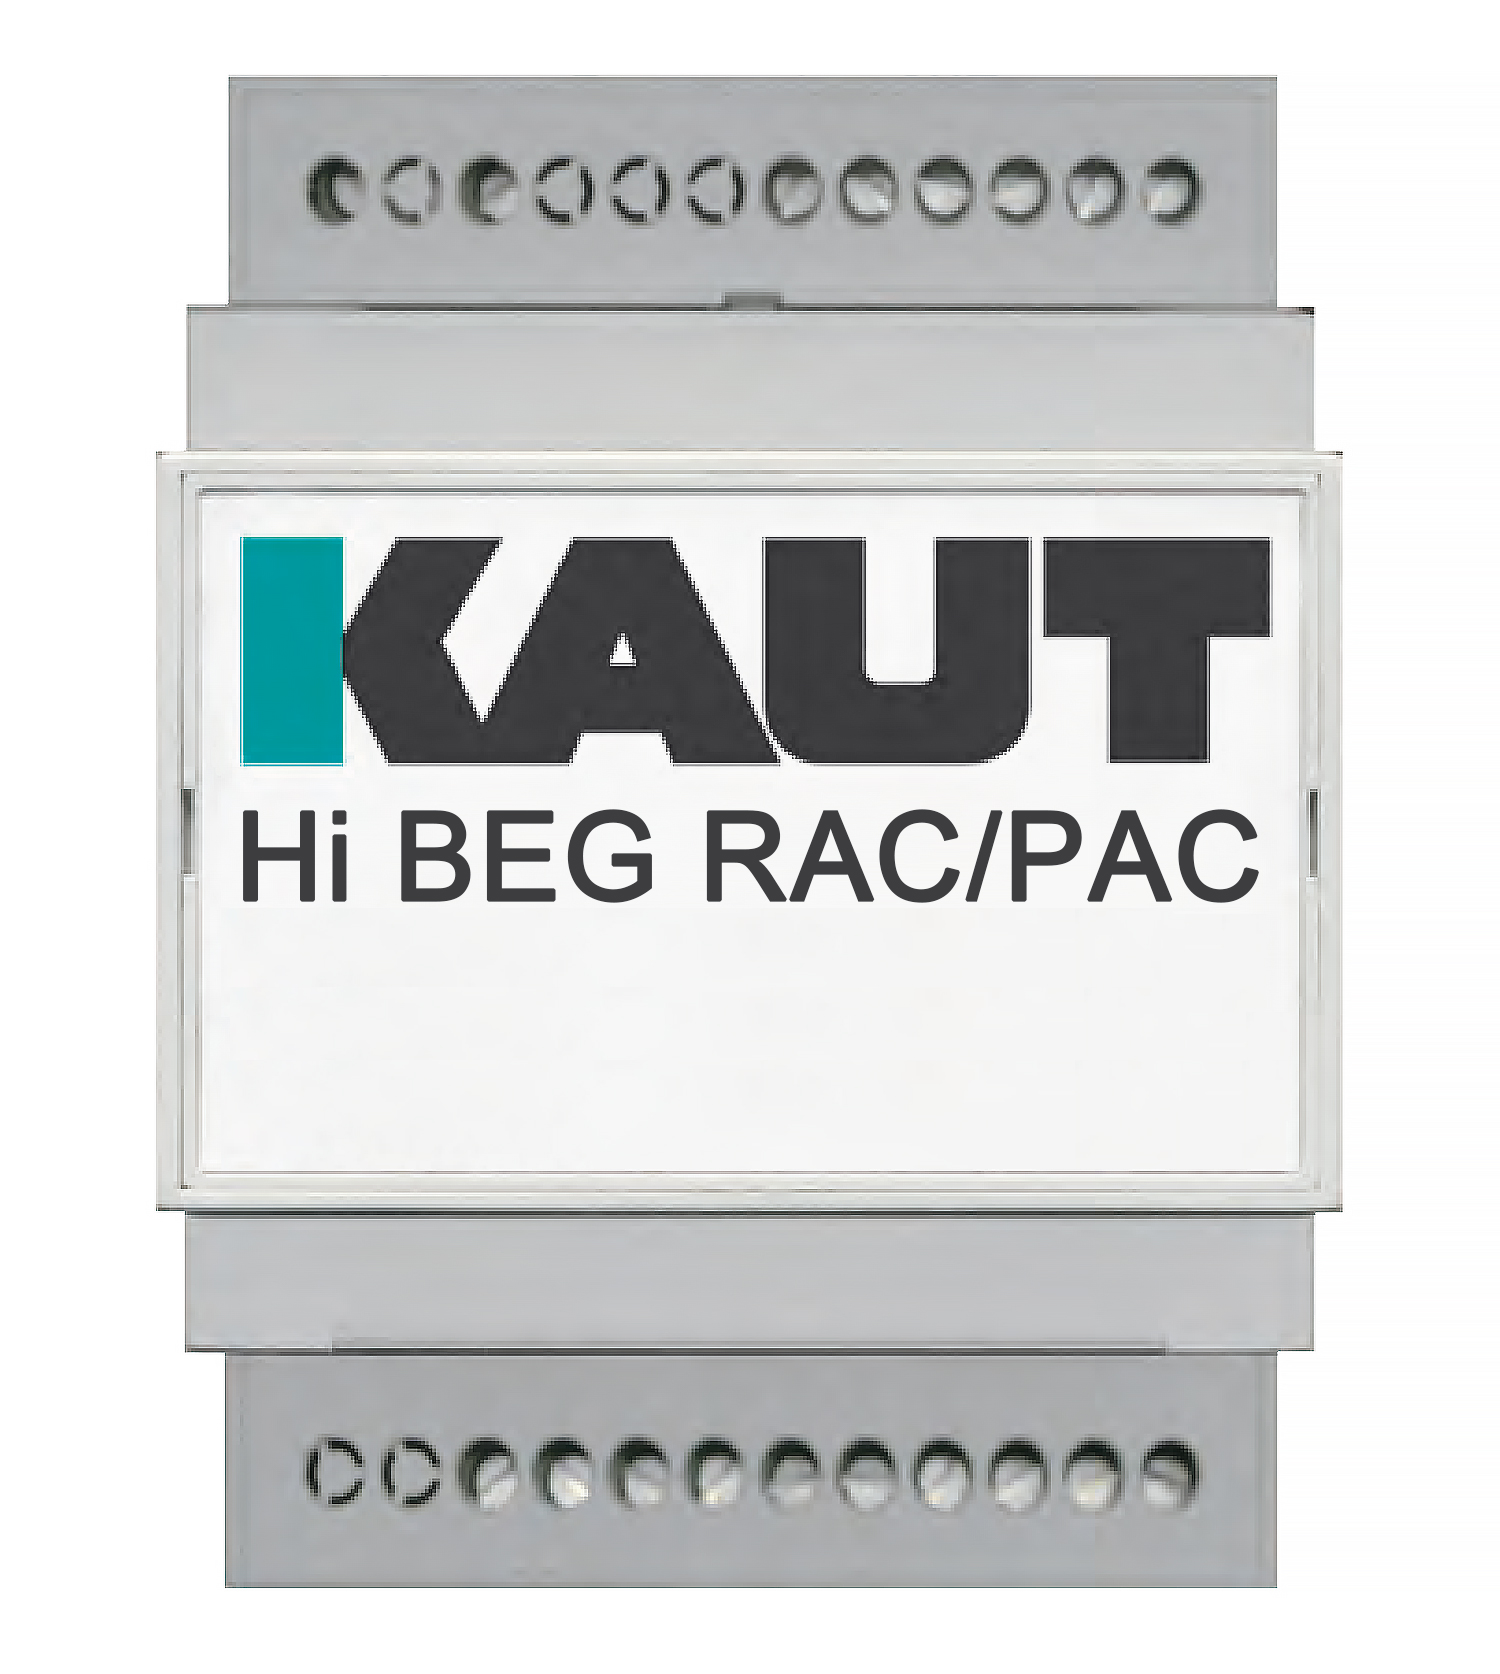 Hi BEG RAC PAC Zusatzplatine Netzdienlichkeit BEG